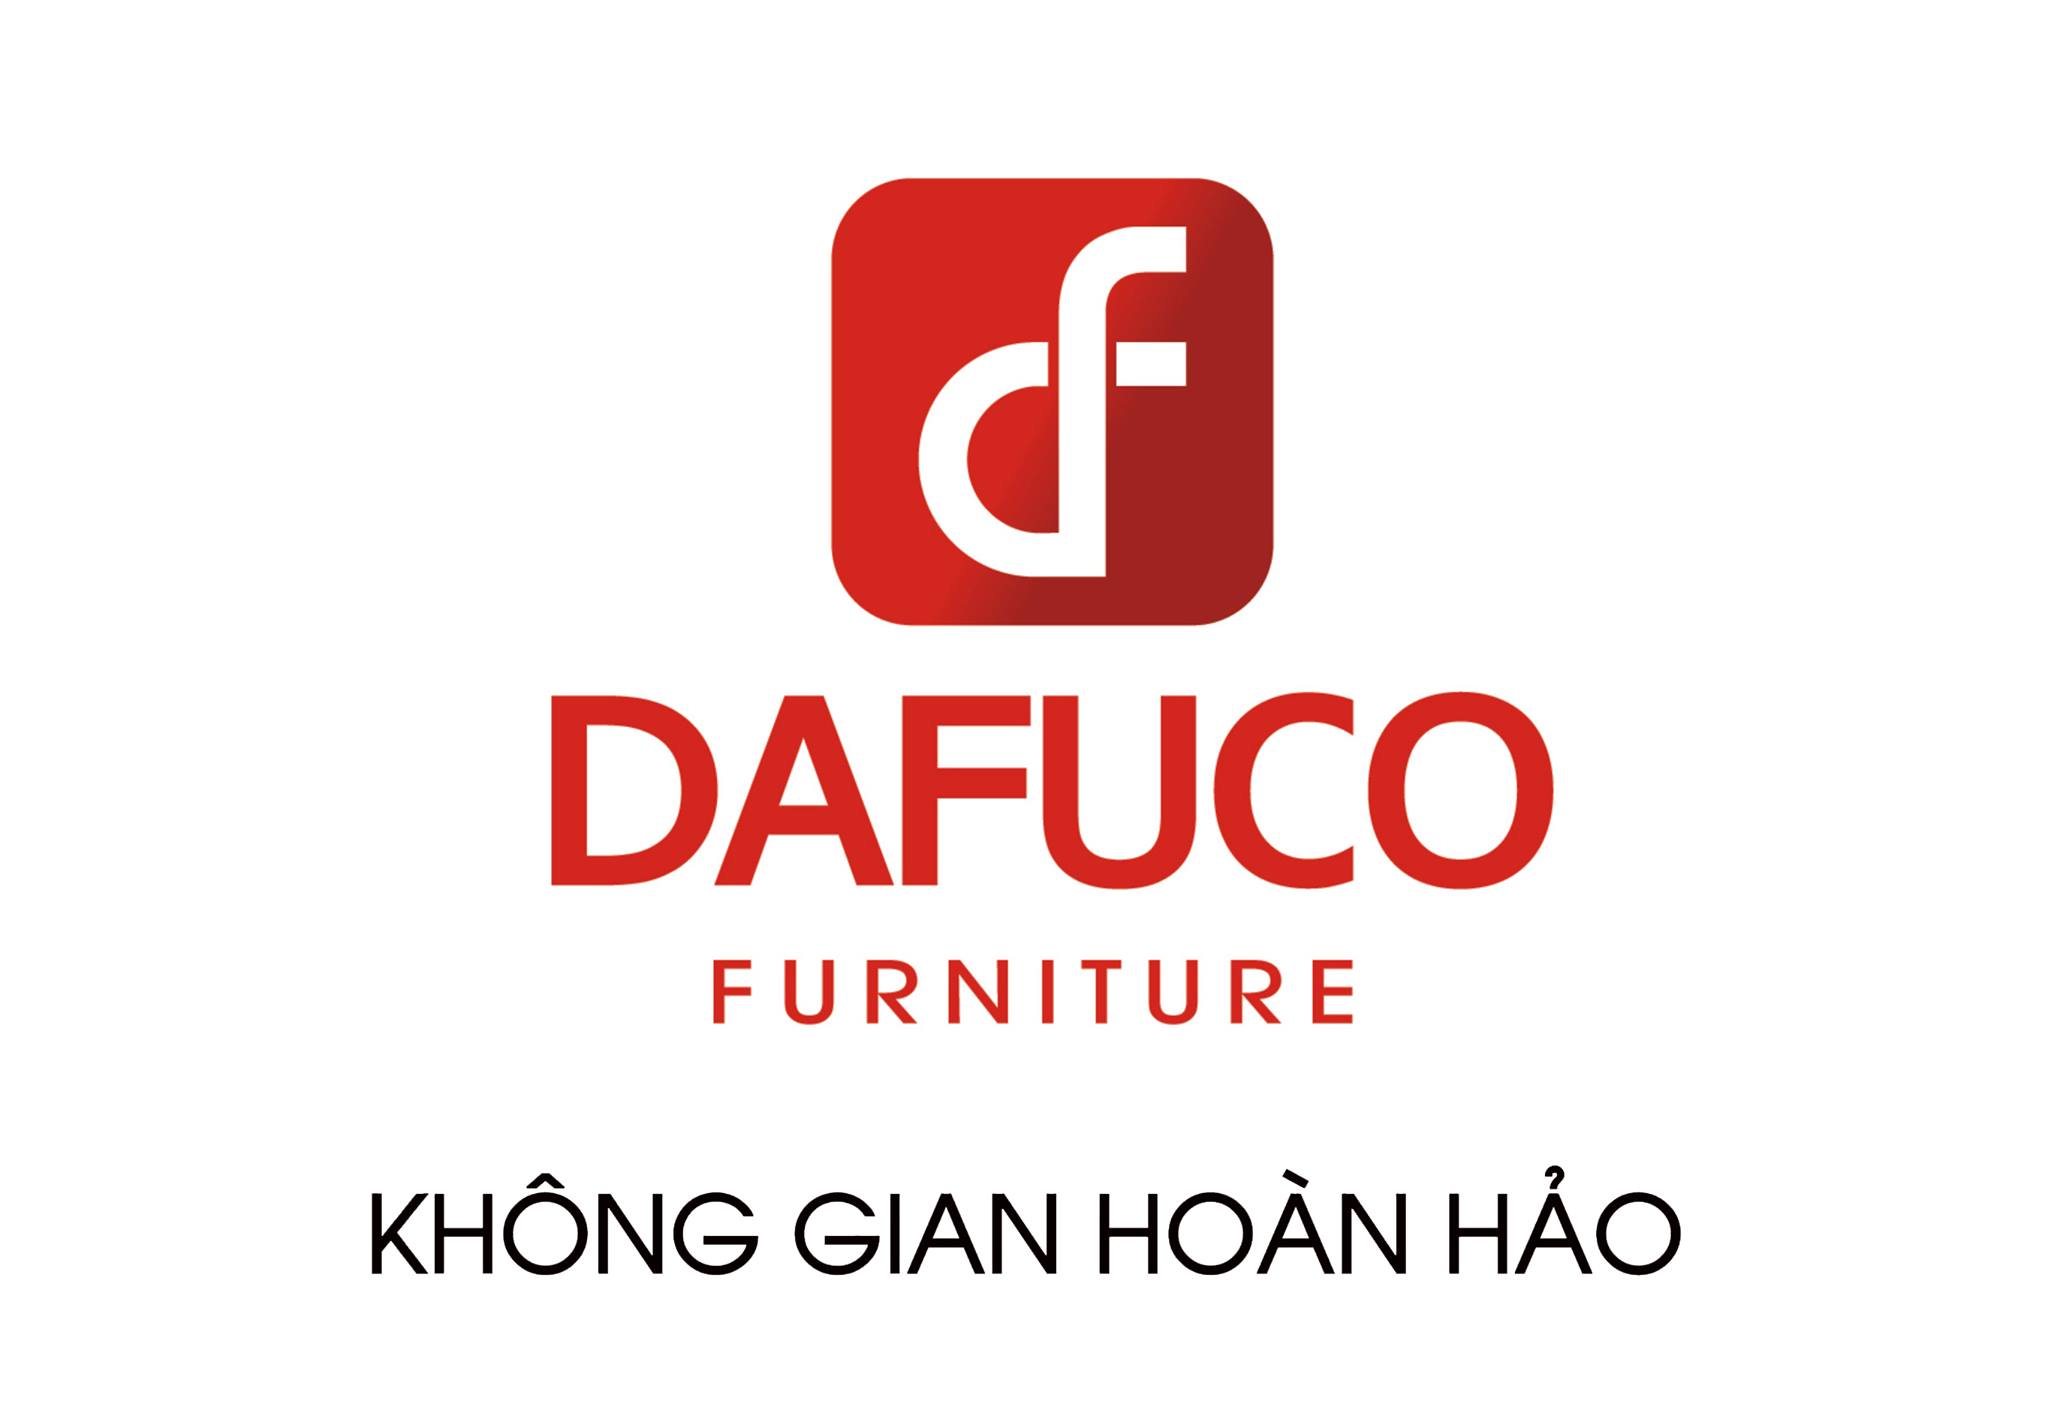 Đánh giá Dafuco Furniture sẽ giúp bạn hiểu rõ hơn về chất lượng sản phẩm cũng như sự hài lòng của khách hàng. Chúng tôi tự tin rằng những đánh giá tốt sẽ khiến bạn tin tưởng và lựa chọn các sản phẩm của chúng tôi. Hãy xem hình ảnh và trải nghiệm sản phẩm ngay hôm nay!